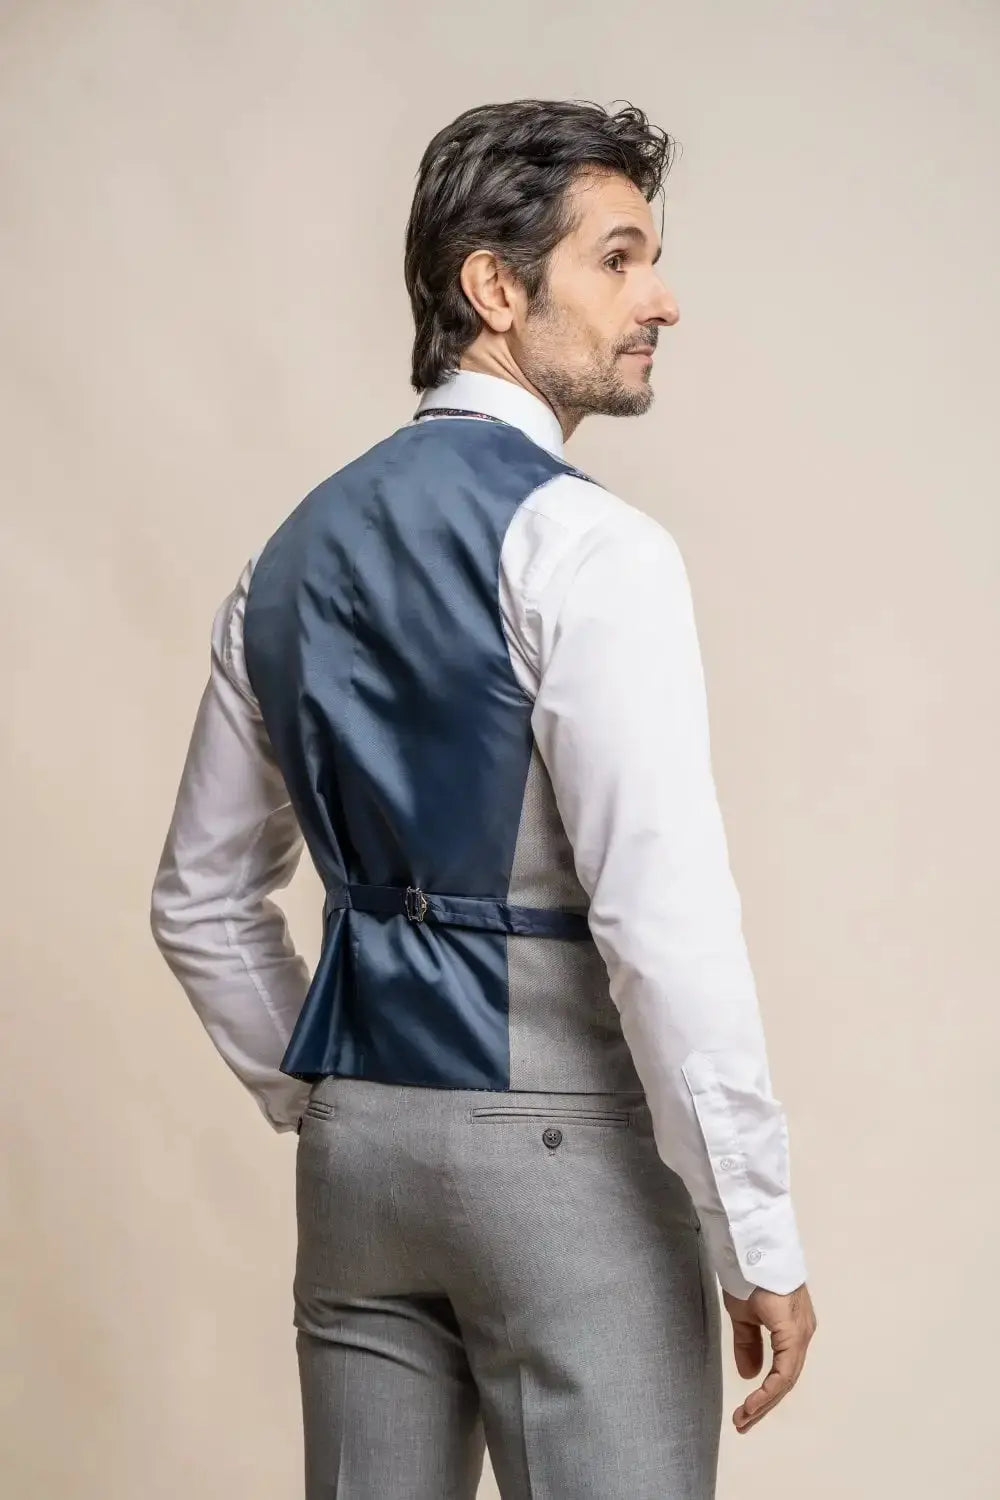 HOUSE OF CAVANI: Reegan Grey Slim Fit Suit